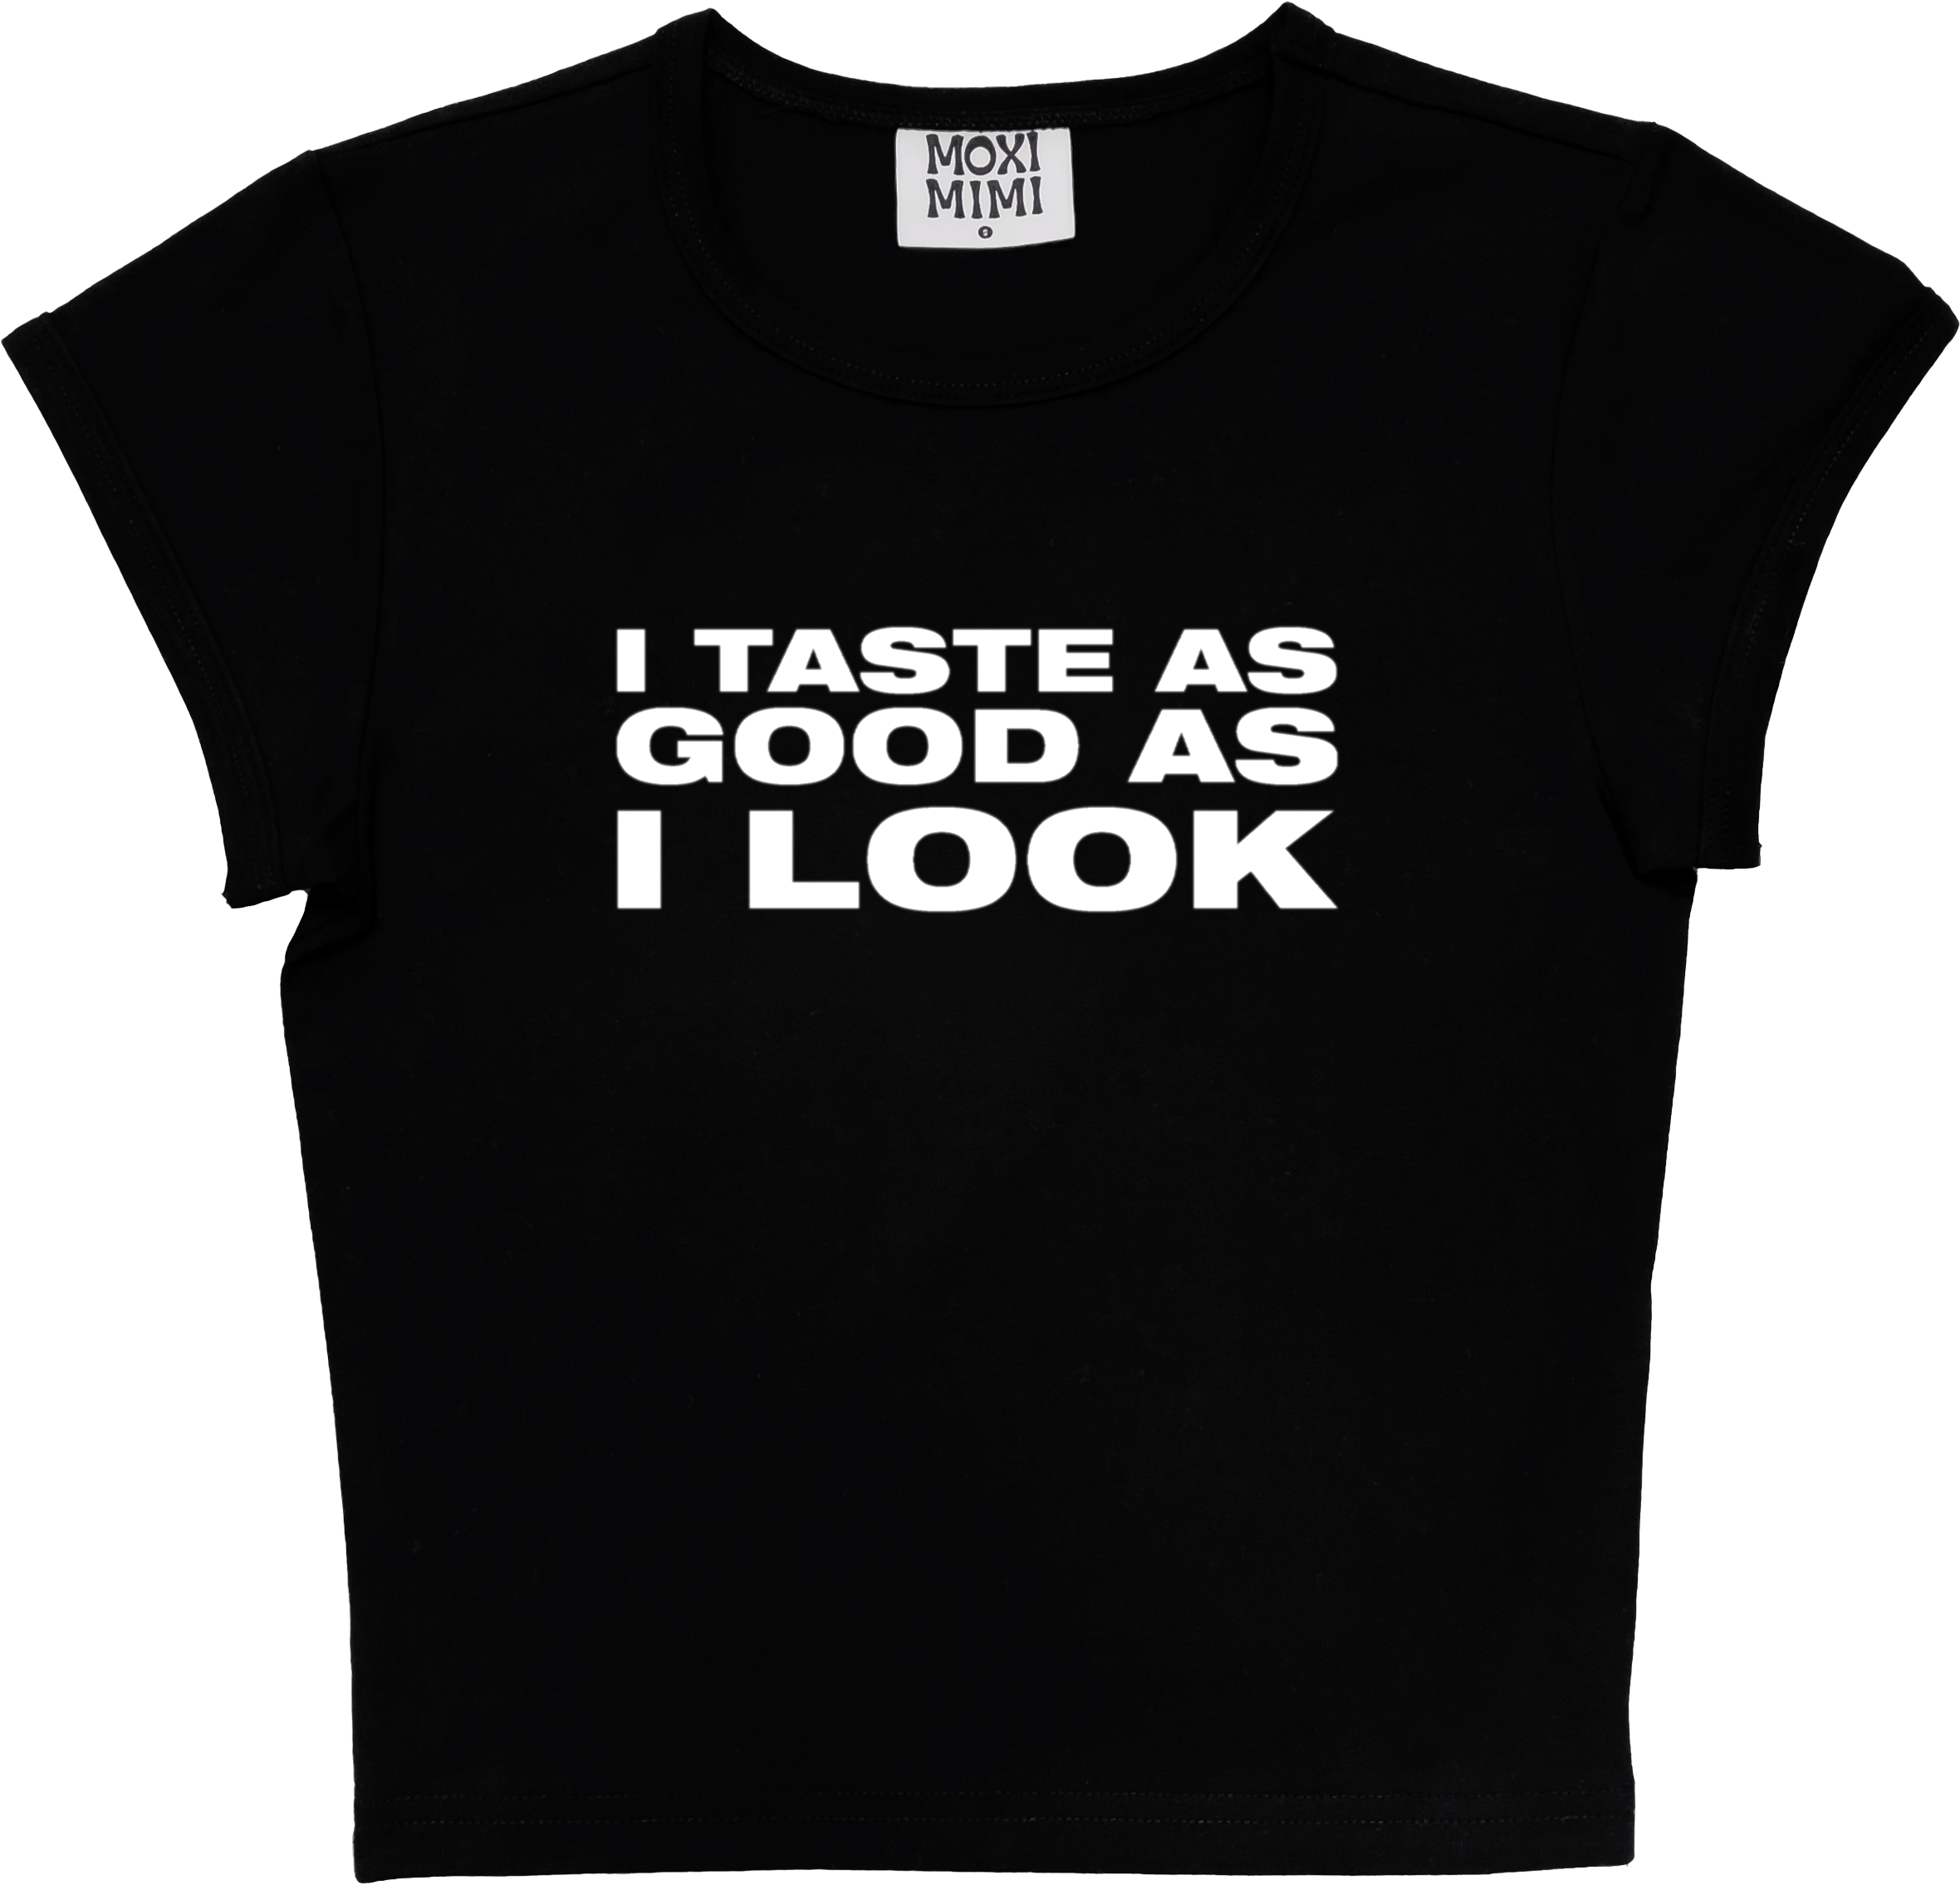 I Taste As Good As I Look in Black